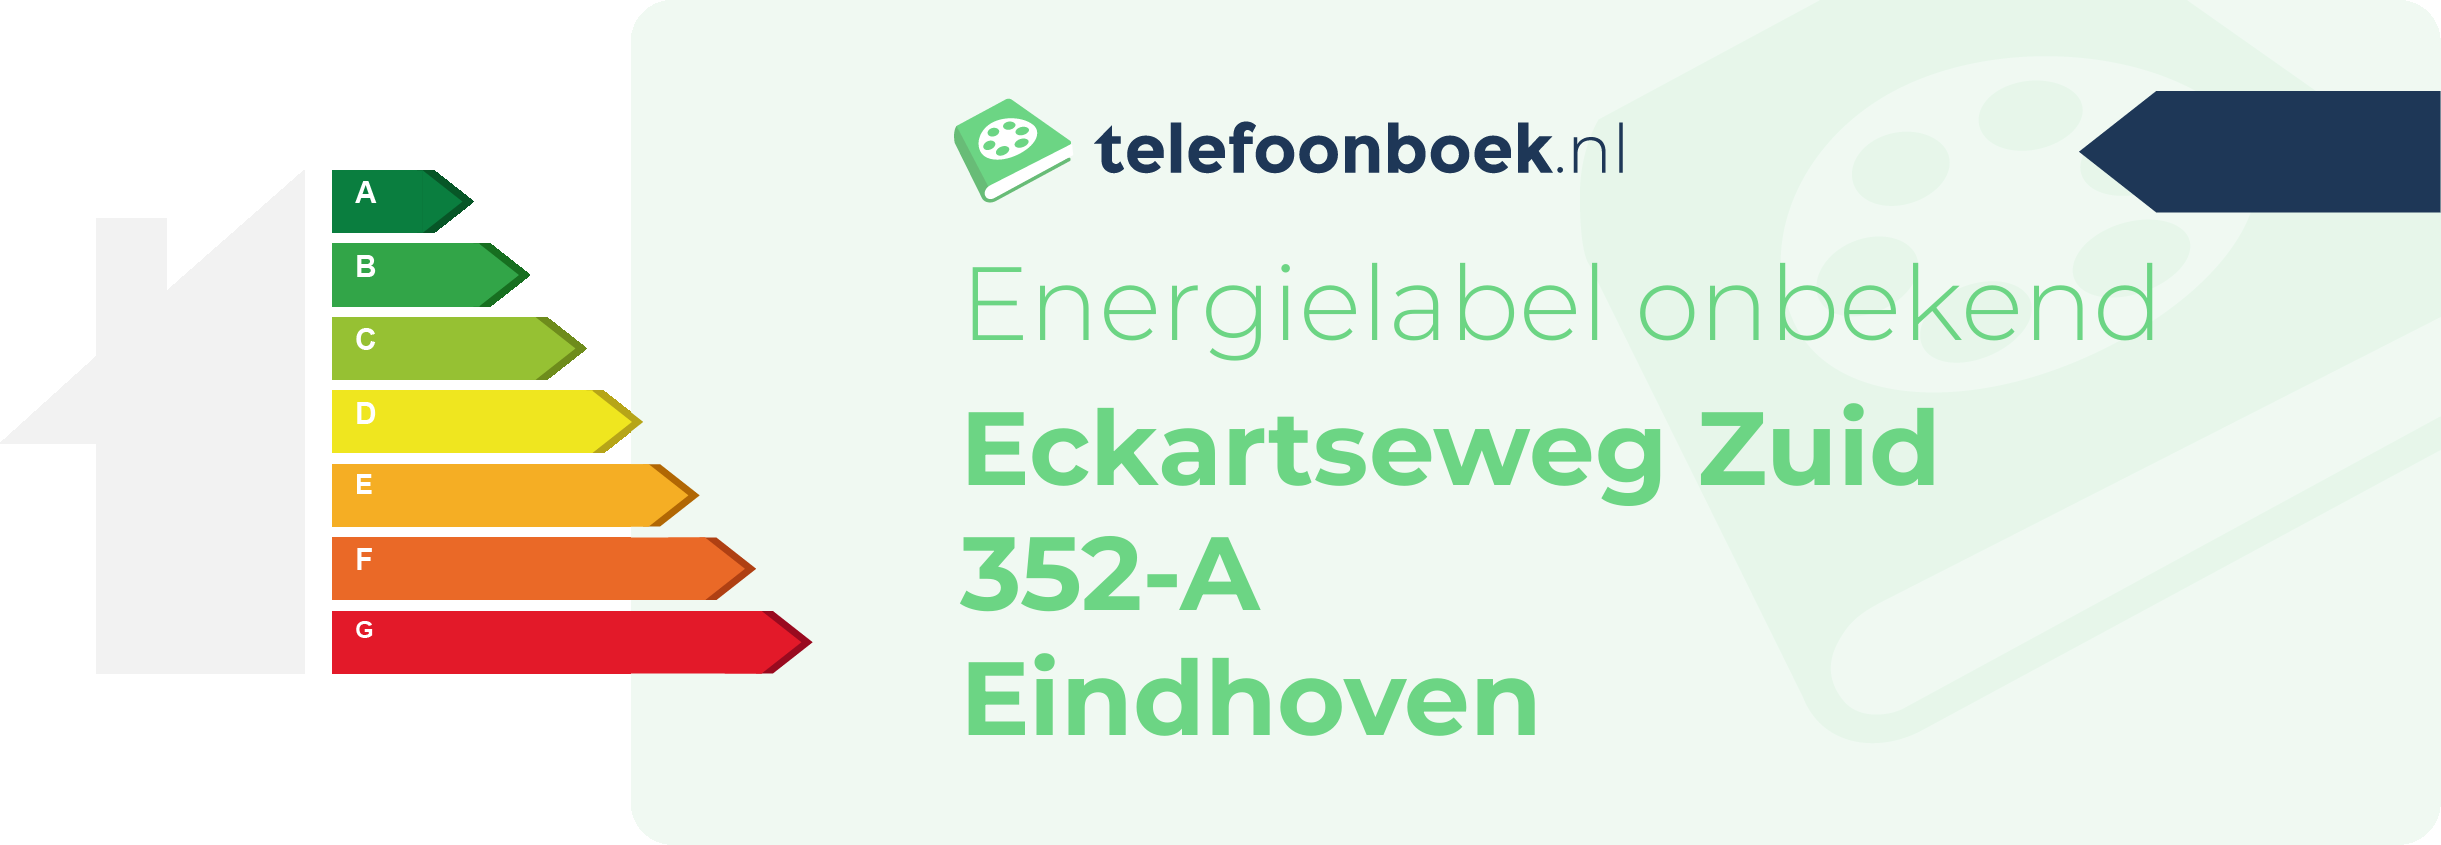 Energielabel Eckartseweg Zuid 352-A Eindhoven